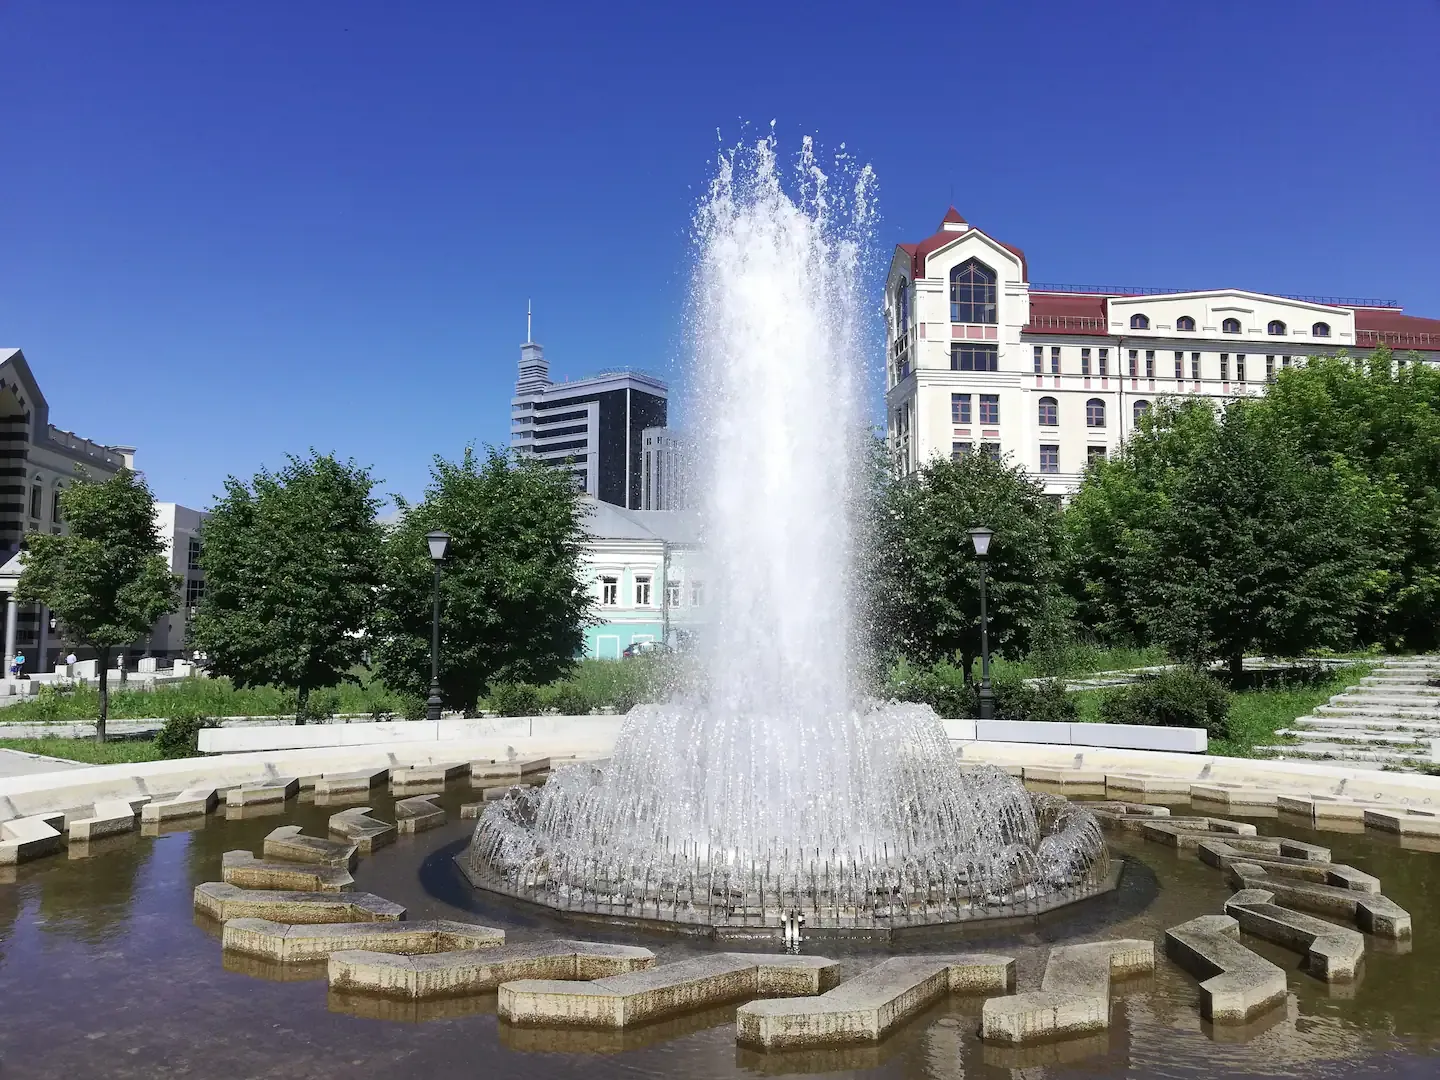 Летом вы можете насладиться фонтанами в 5 минутах ходьбы от дома :)